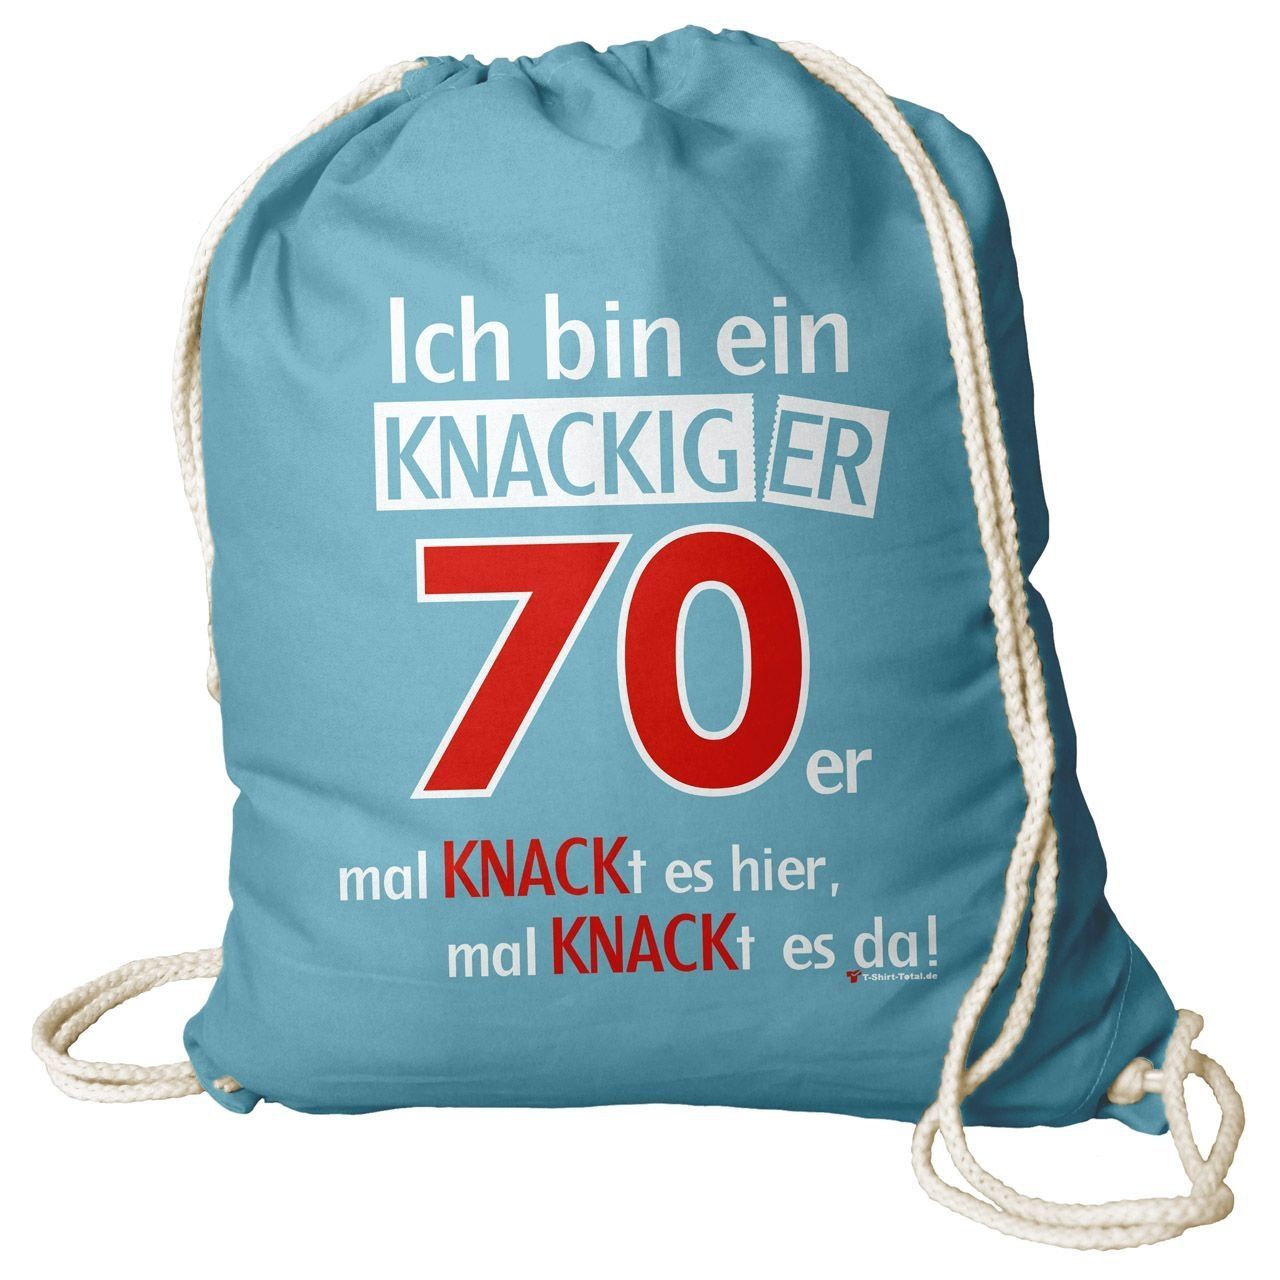 Knackiger 70er Rucksack Beutel türkis